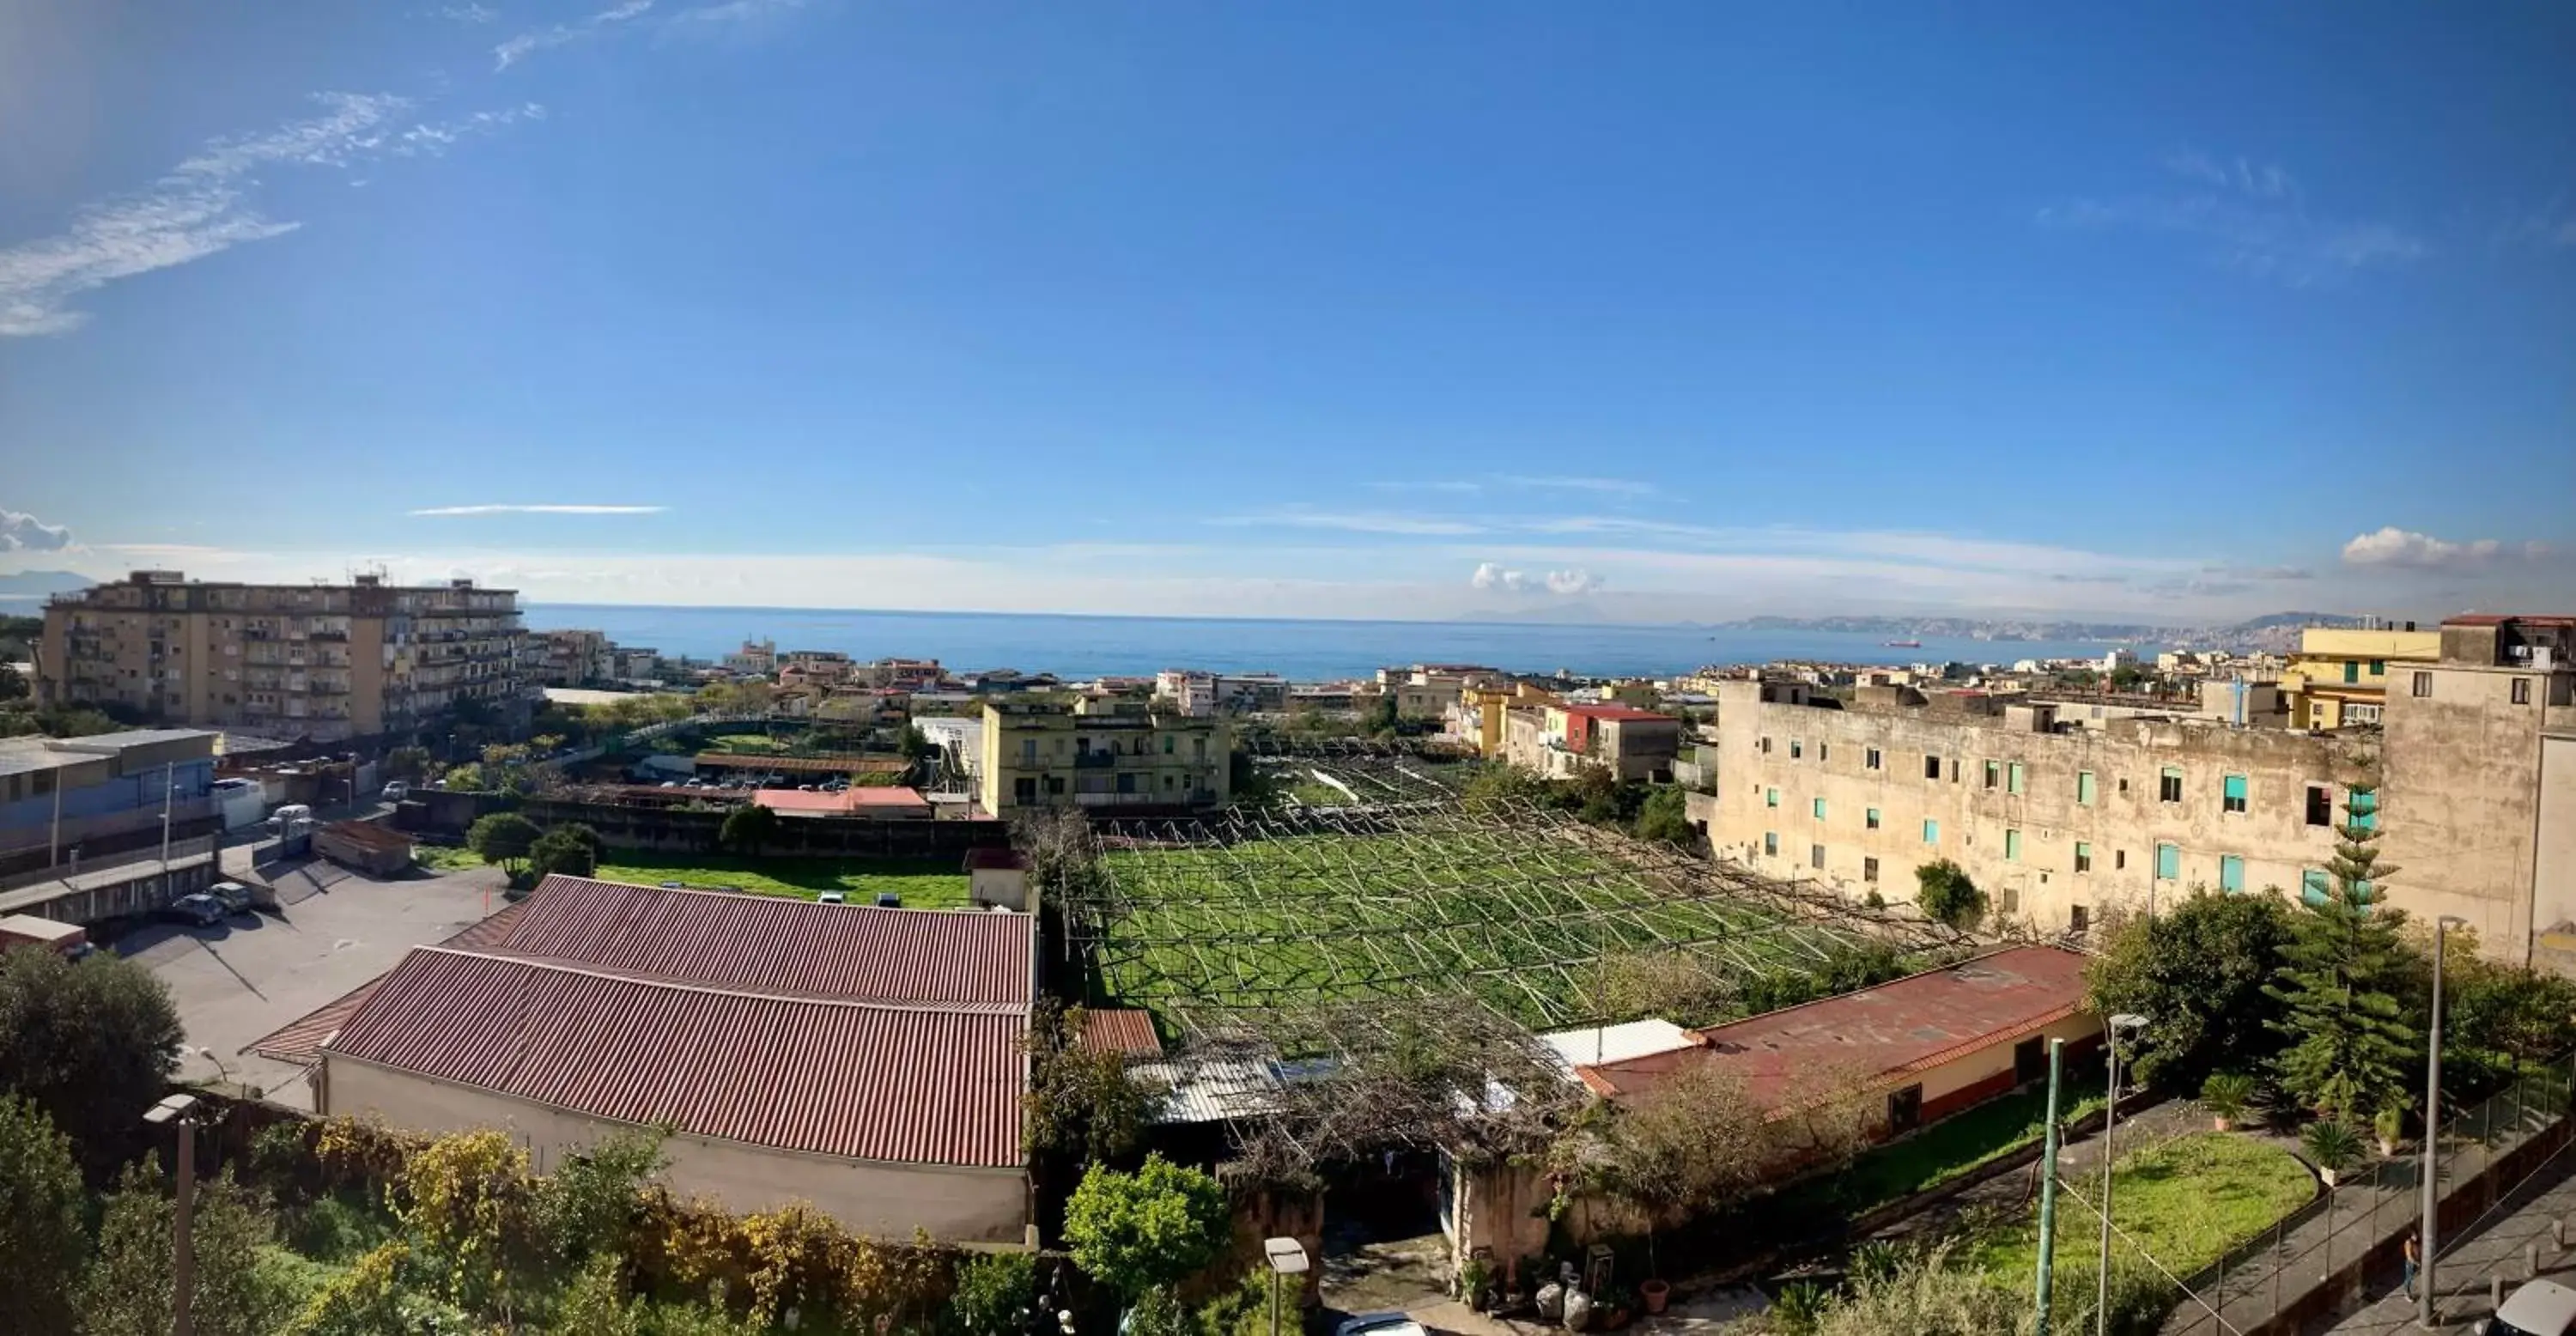 Day, Bird's-eye View in Miglio d'Oro Park Hotel